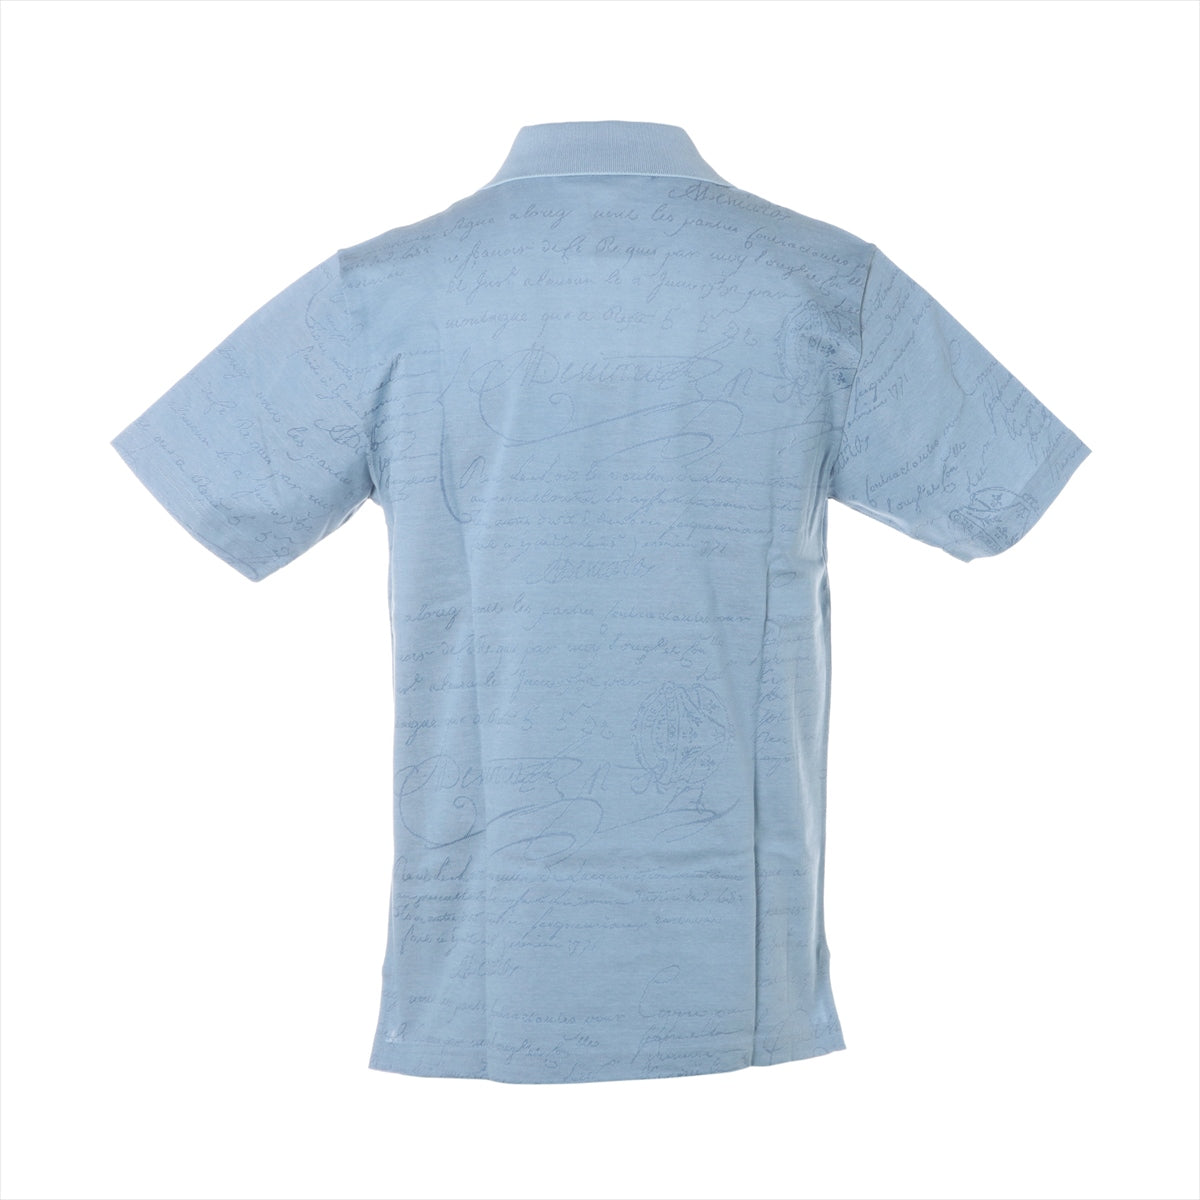 Berluti Calligraphy Cotton Polo shirt S Men's Blue